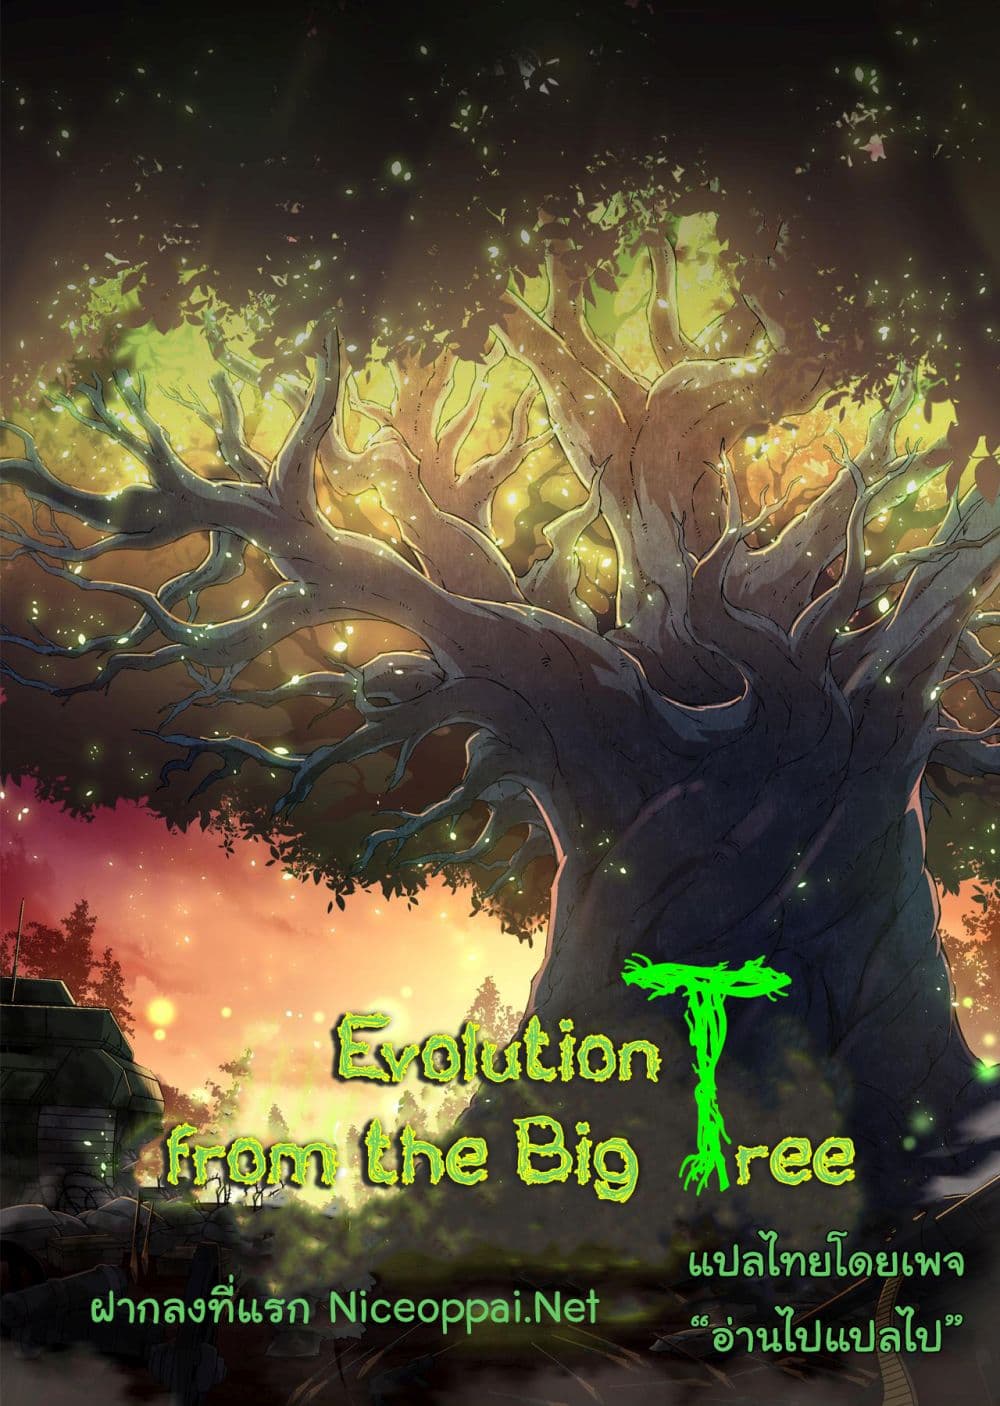 Evolution from the Big Tree Ã Â¸â€¢Ã Â¸Â­Ã Â¸â„¢Ã Â¸â€”Ã Â¸ÂµÃ Â¹Ë† 10 (51)